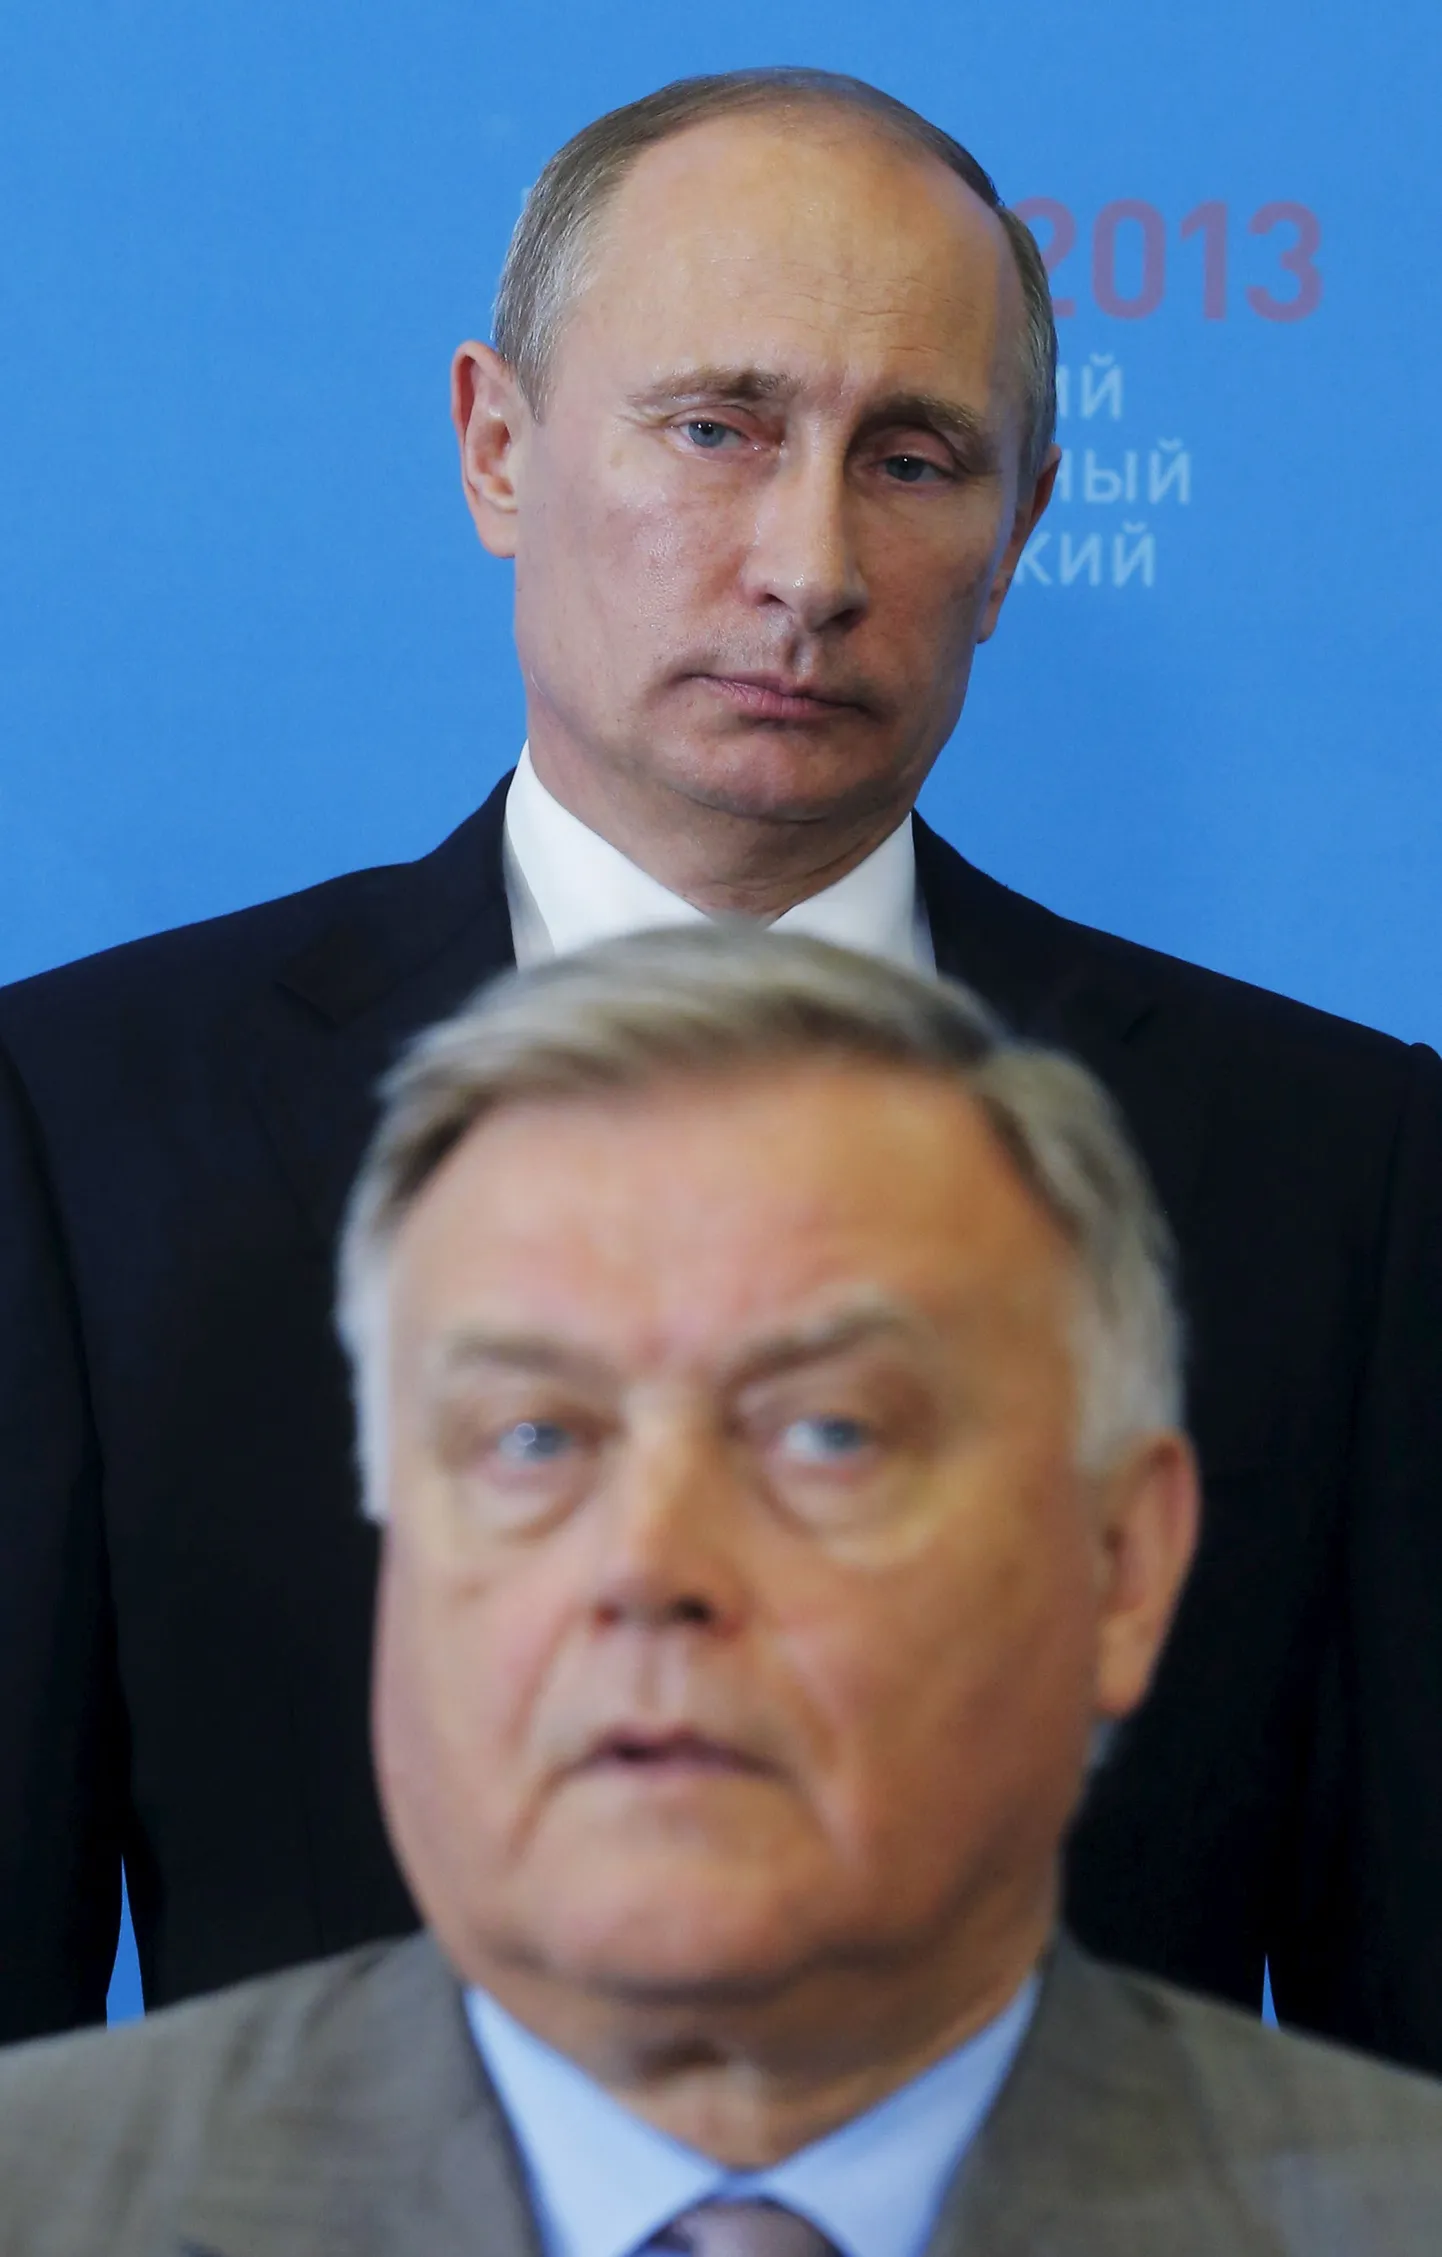 Vene raudteejuht Vladimir Jakunin (alumine)ja riigipea Vladimir Putin 2013. aastal.